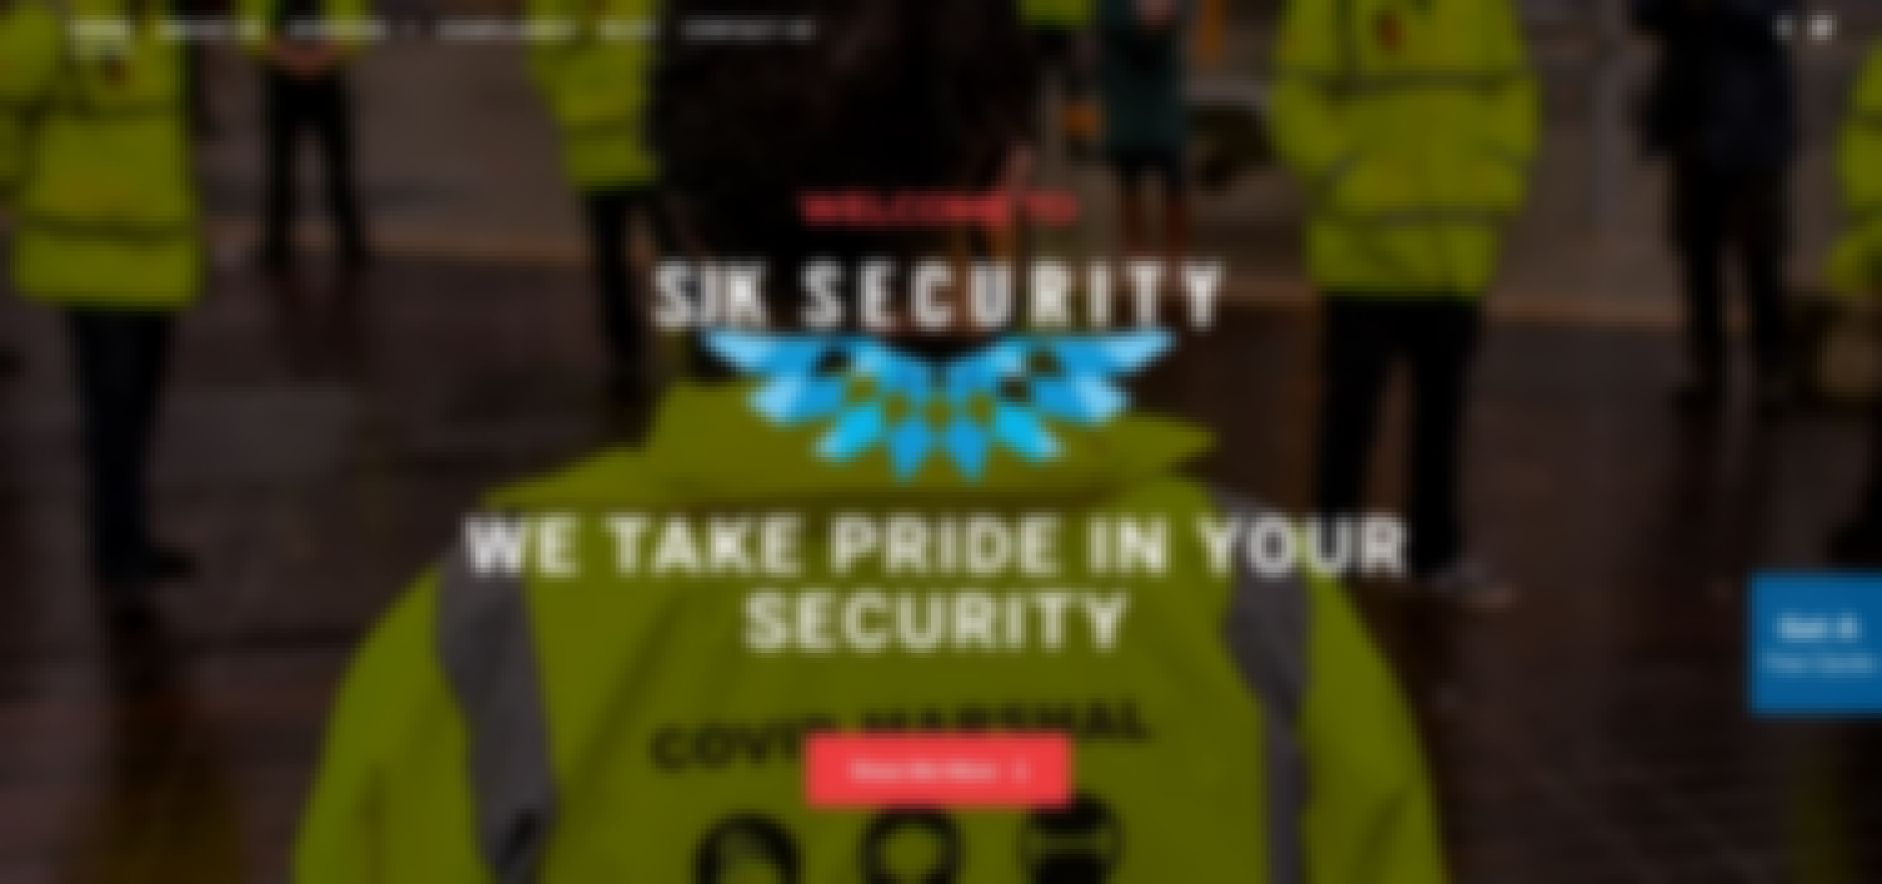 sjk security security guard company sydney